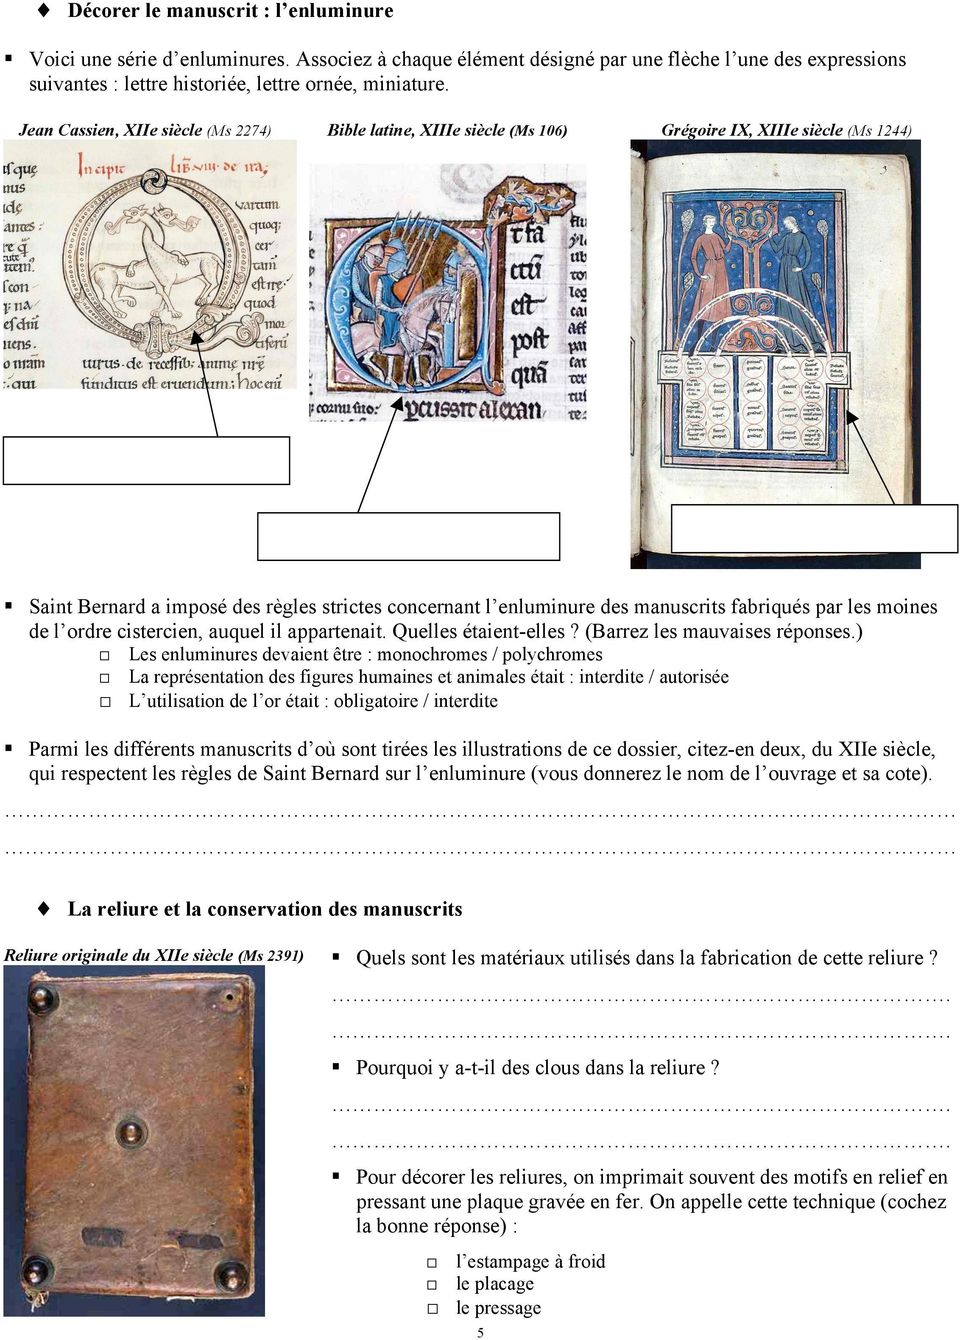 Saint Bernard a imposé des règles strictes concernant l enluminure des manuscrits fabriqués par les moines de l ordre cistercien, auquel il appartenait. Quelles étaient-elles?